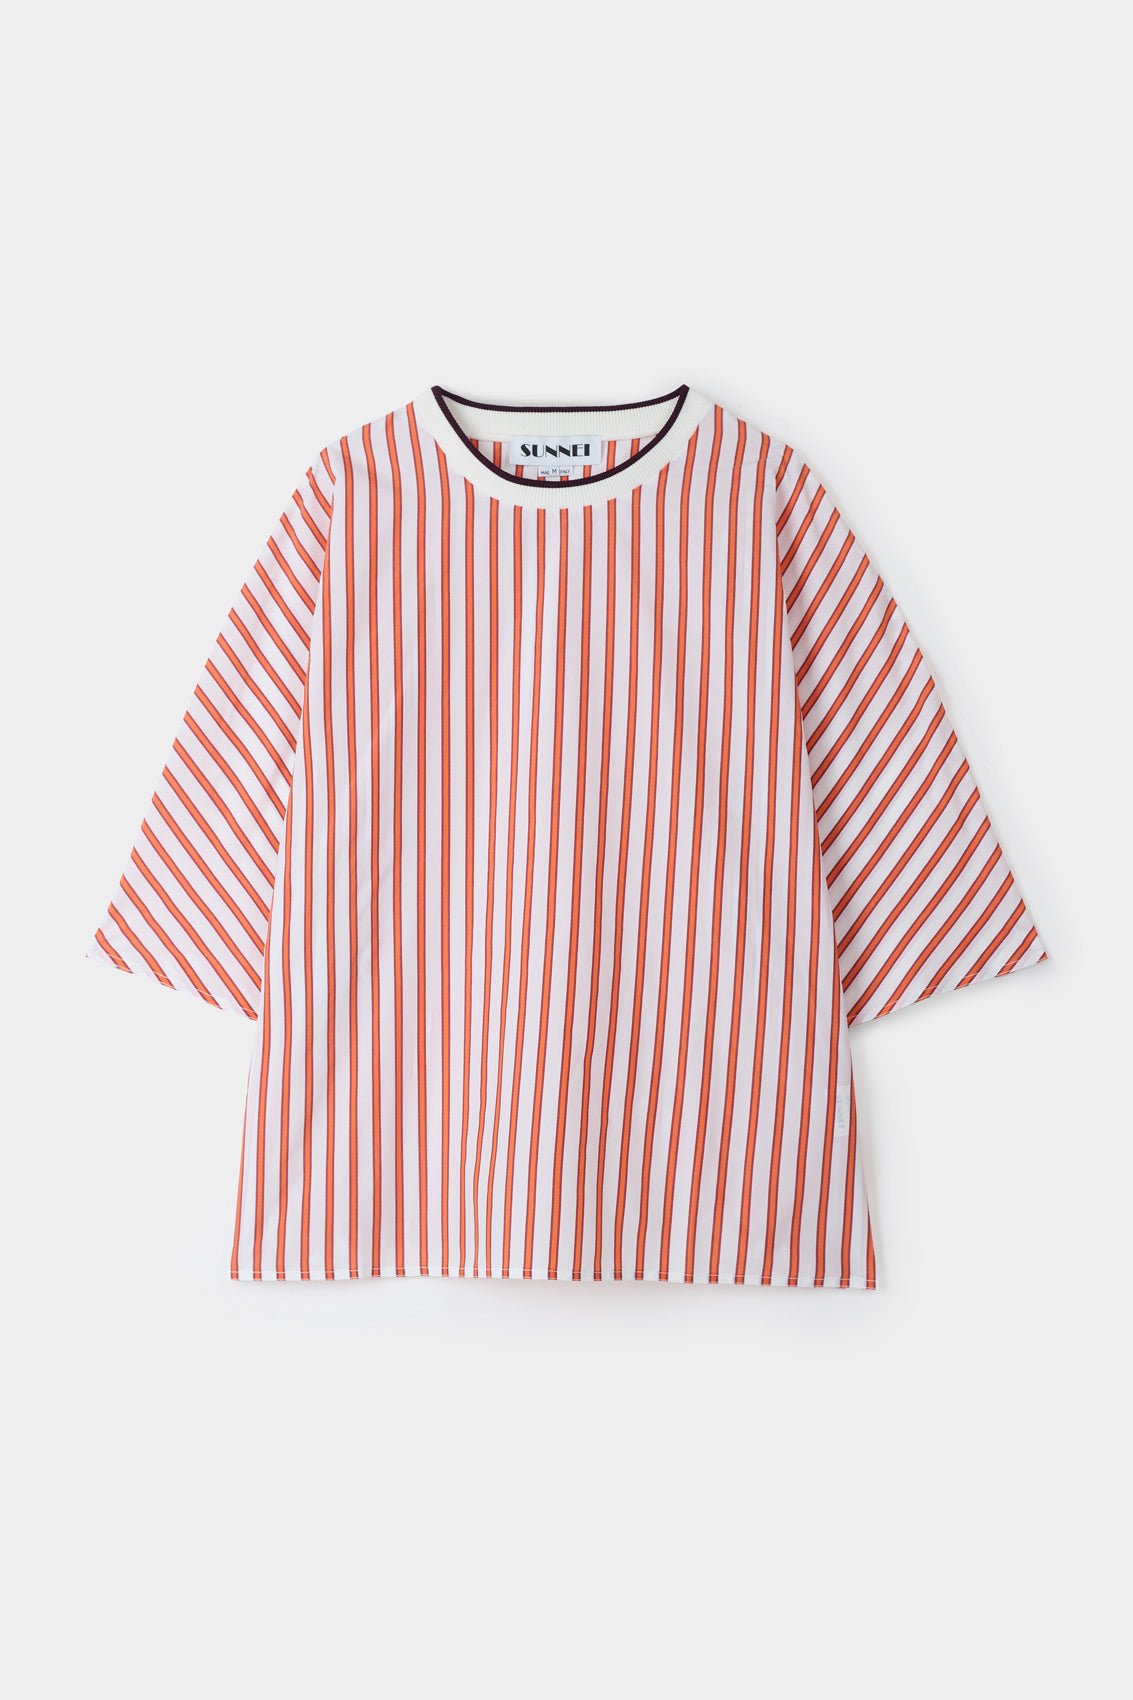 KIMONO T-SHIRT / cream & red stripes